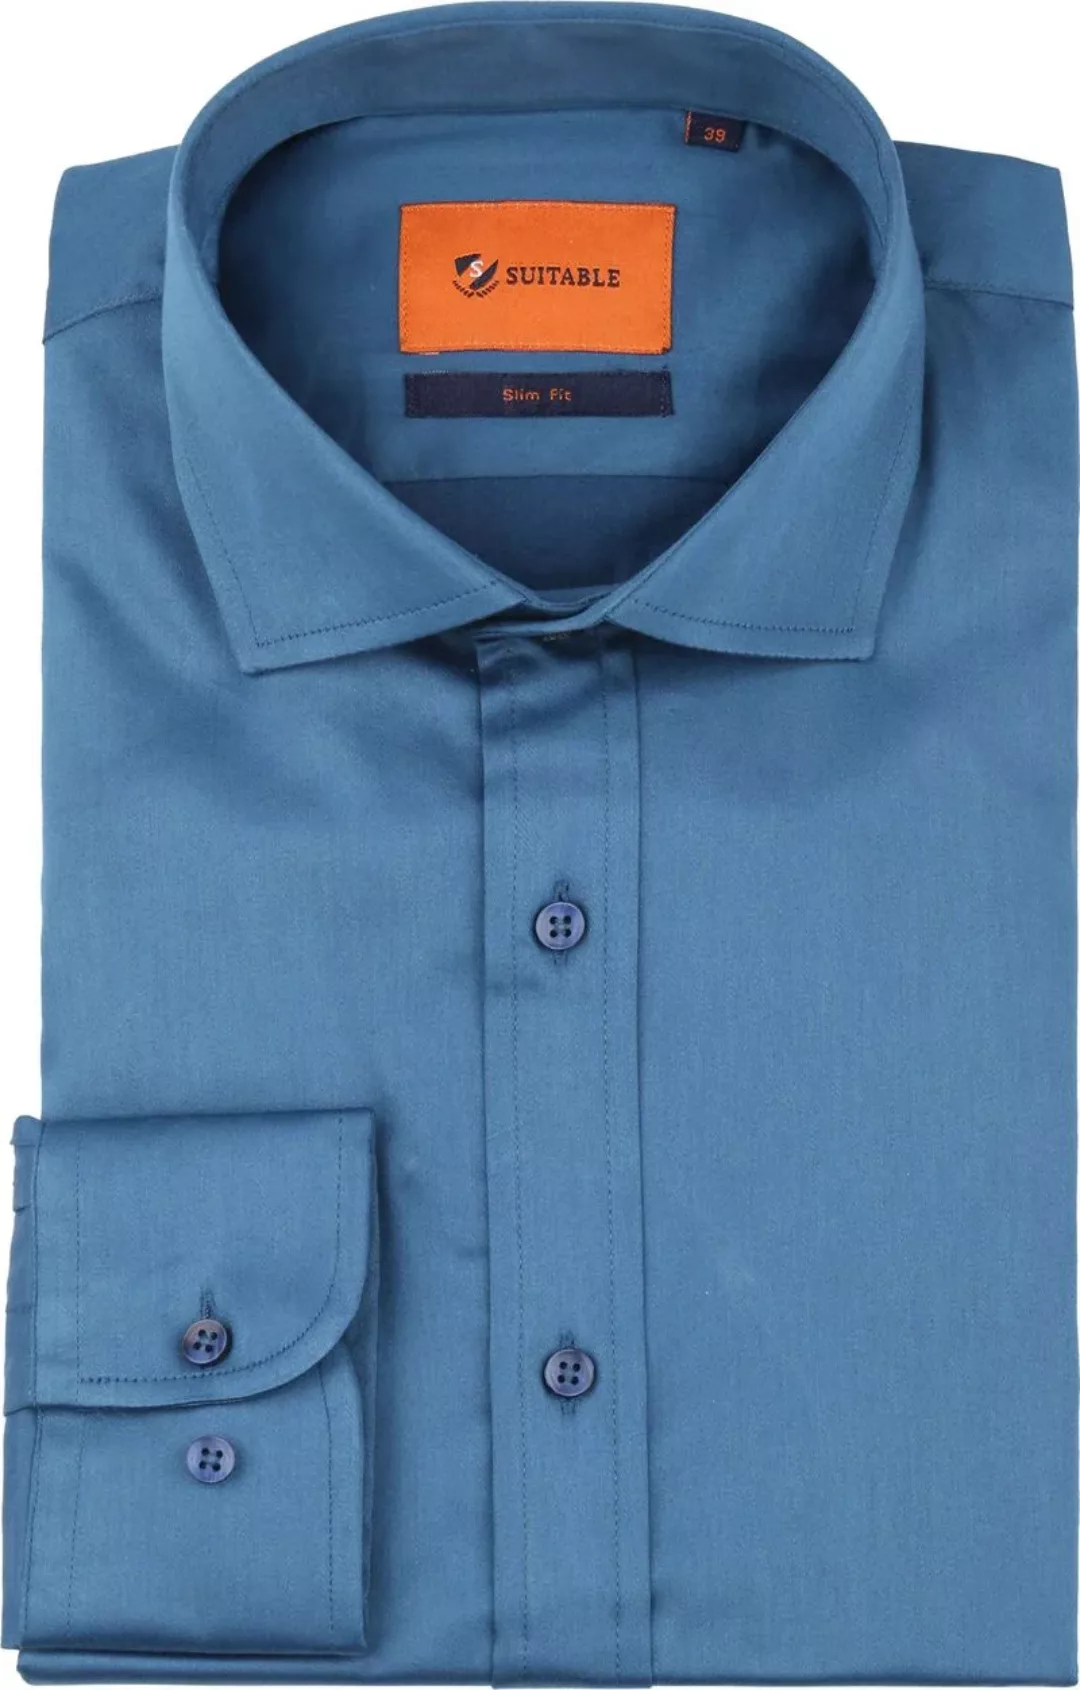 Suitable Satin Hemd Blau - Größe 38 günstig online kaufen